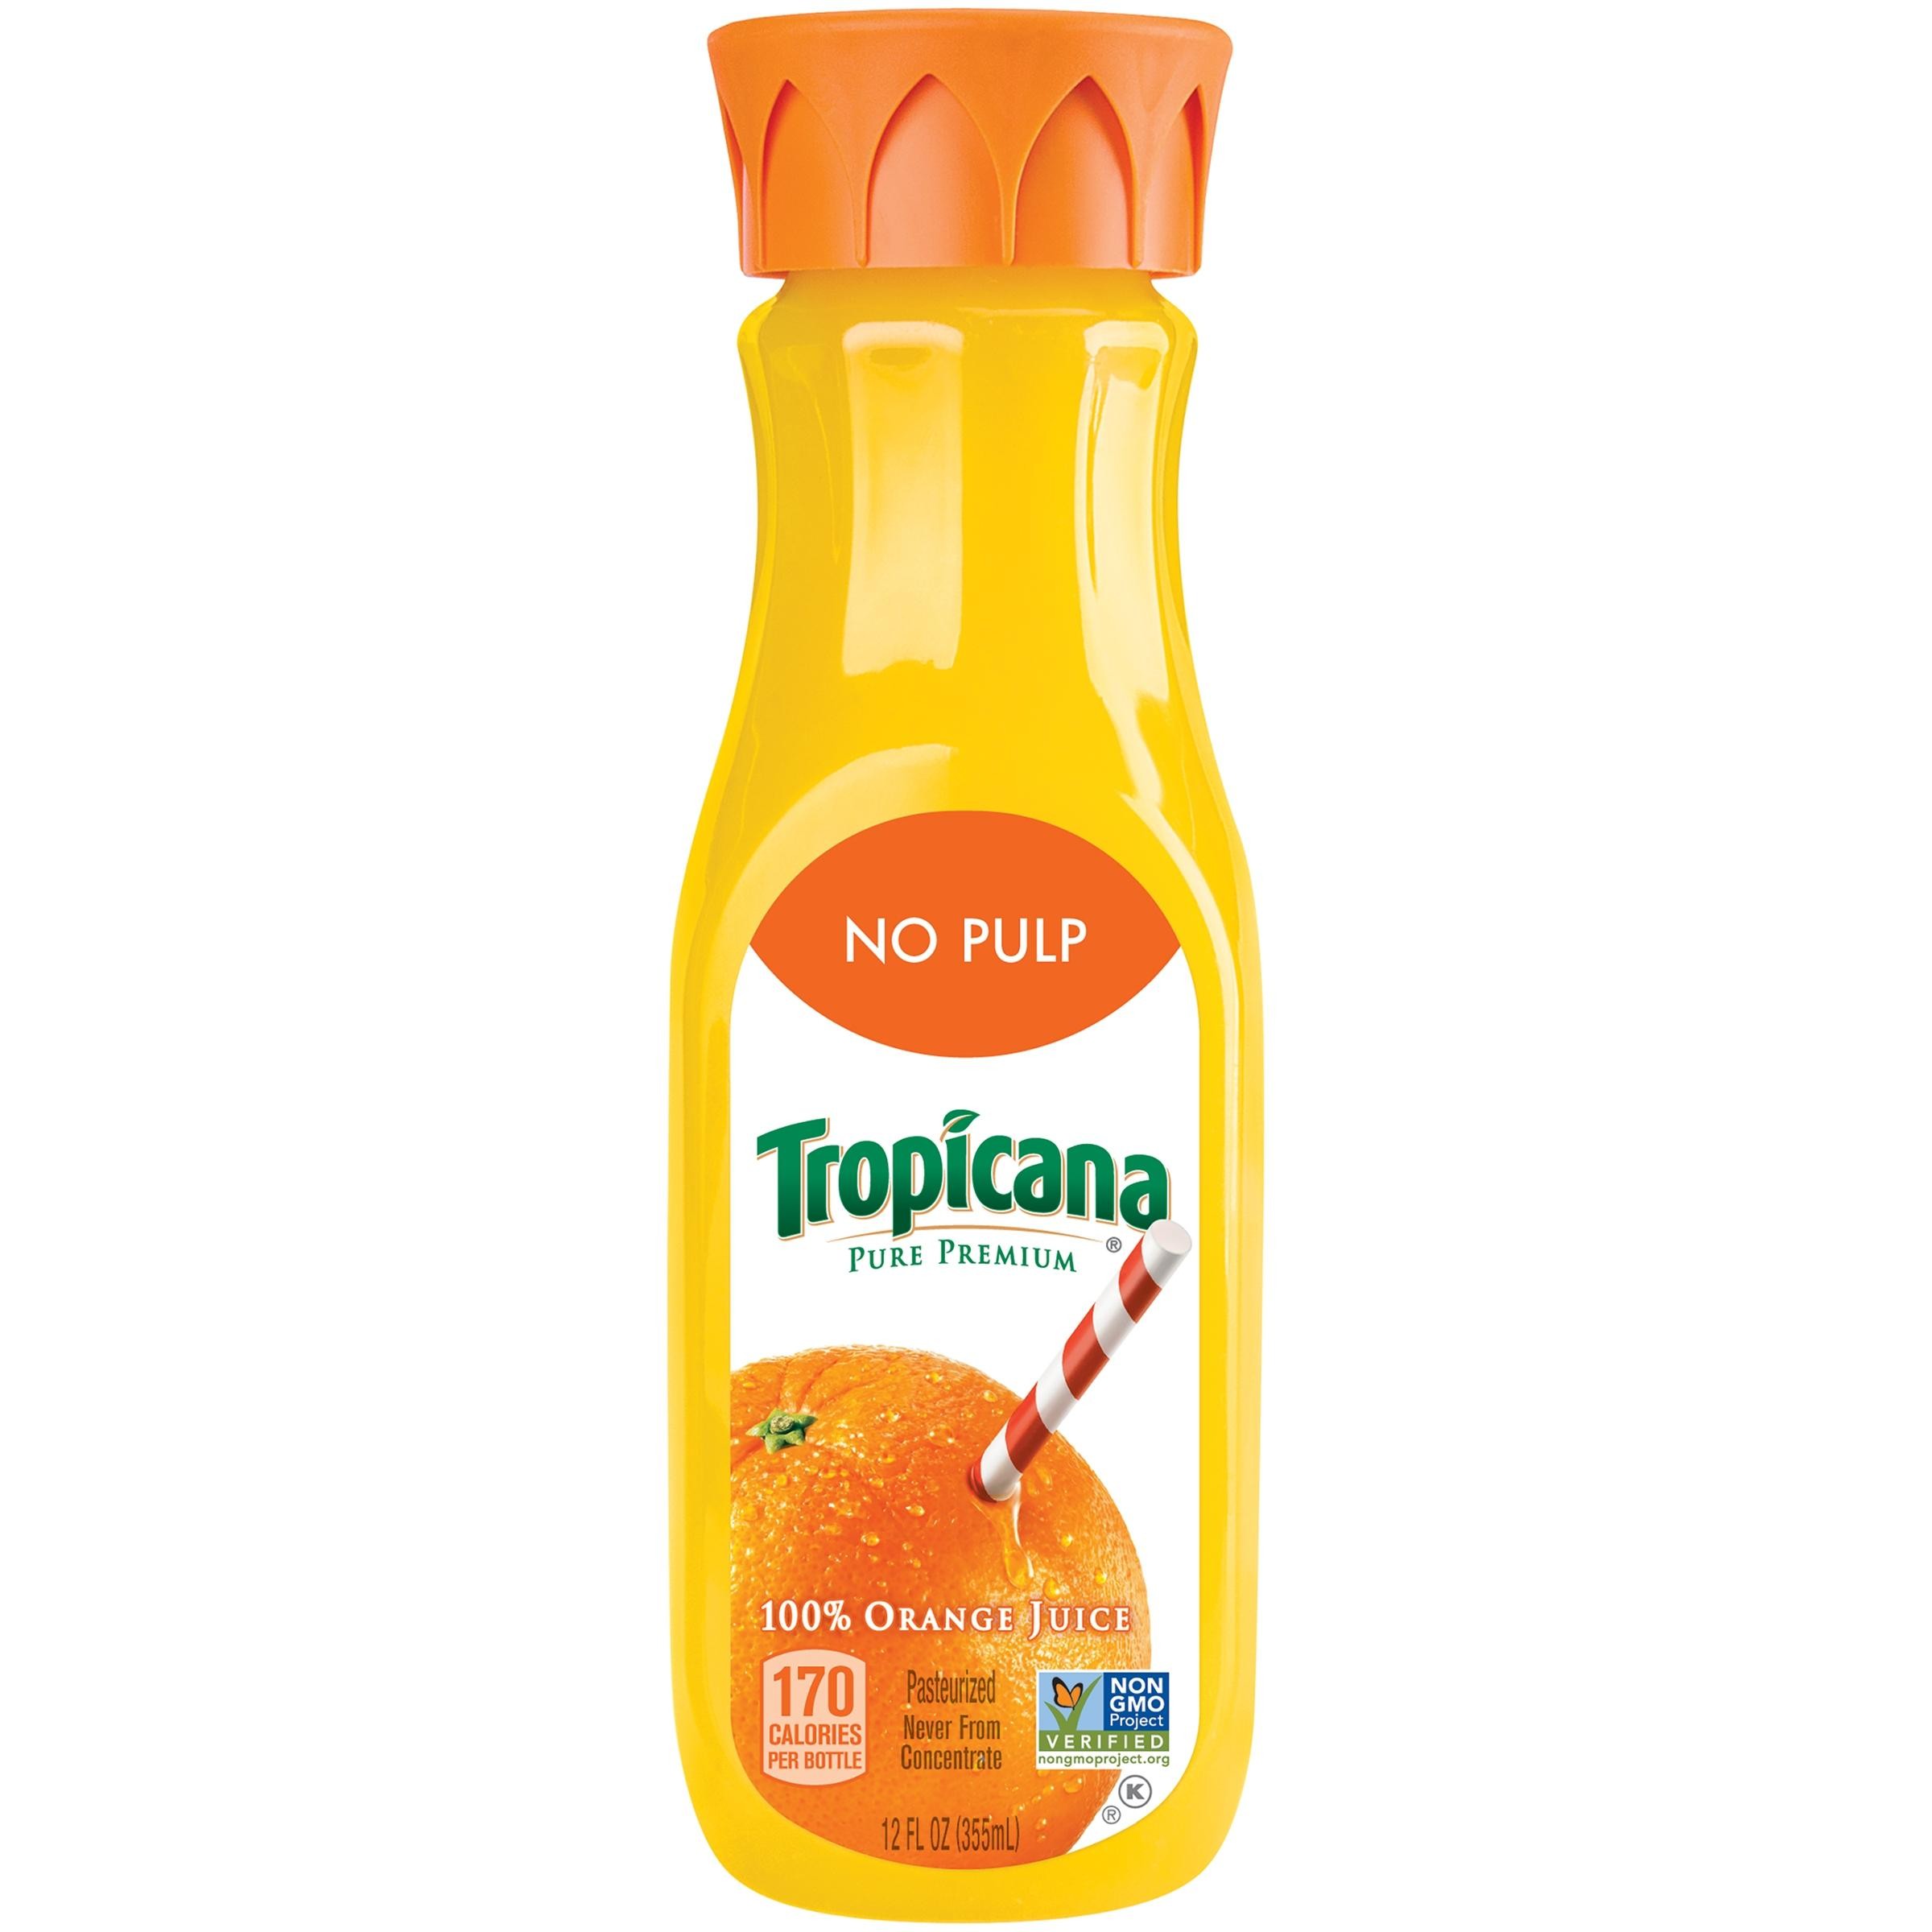 Tropicana Pure Premium Original Orange Juice, 12 Oz